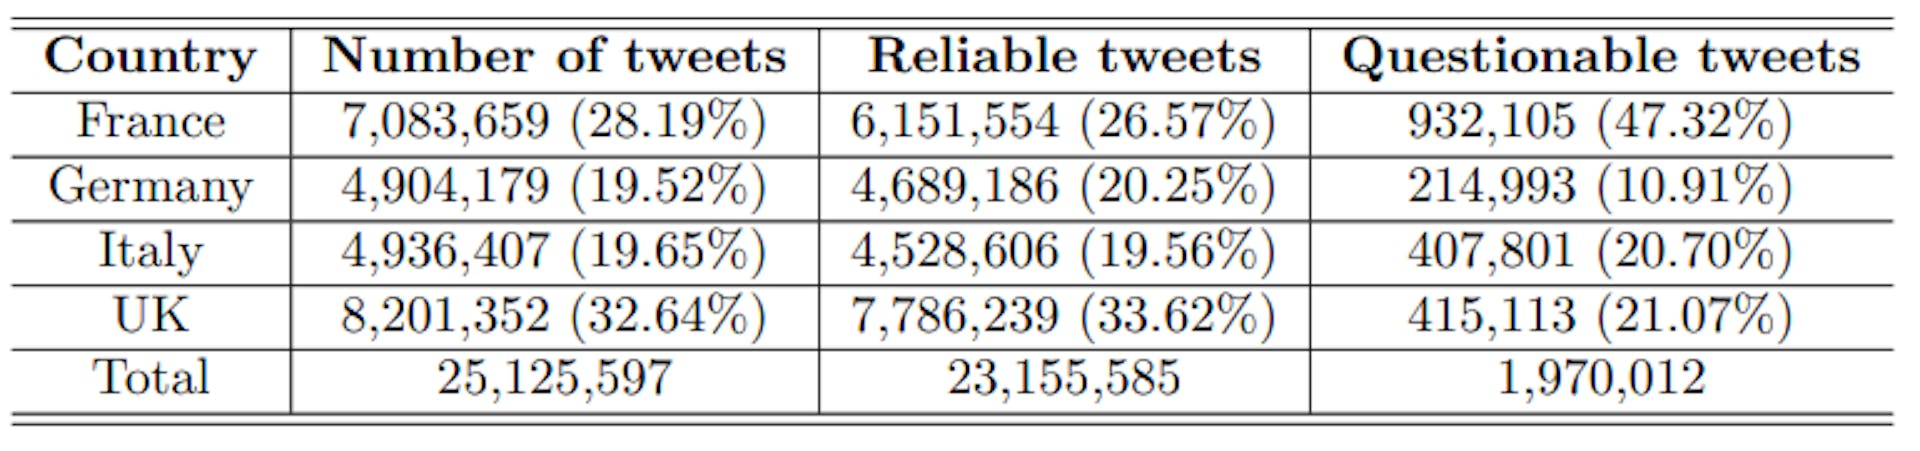 Tabela 2: Volume de tweets por país e confiabilidade